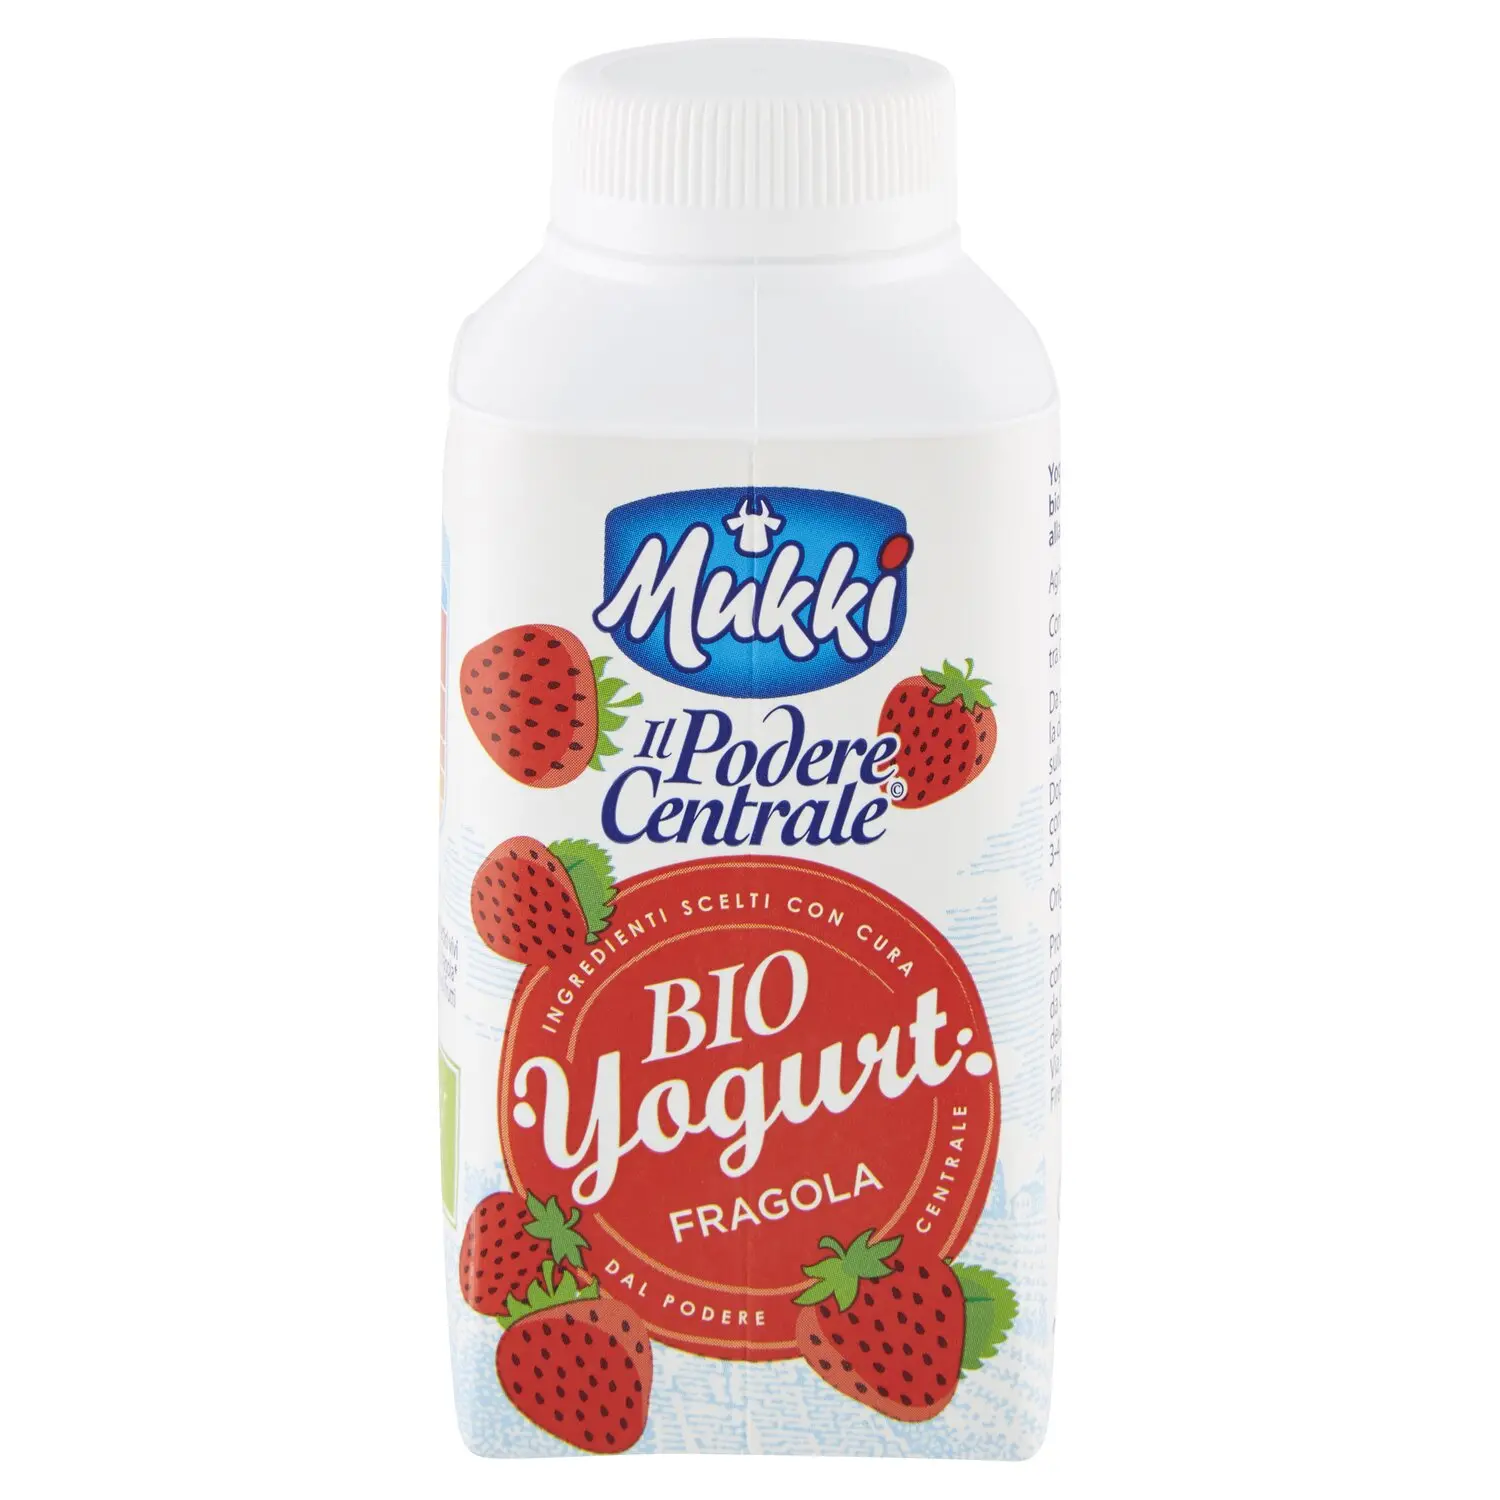 Mukki Il Podere Centrale Bio Yogurt Fragola 250 g